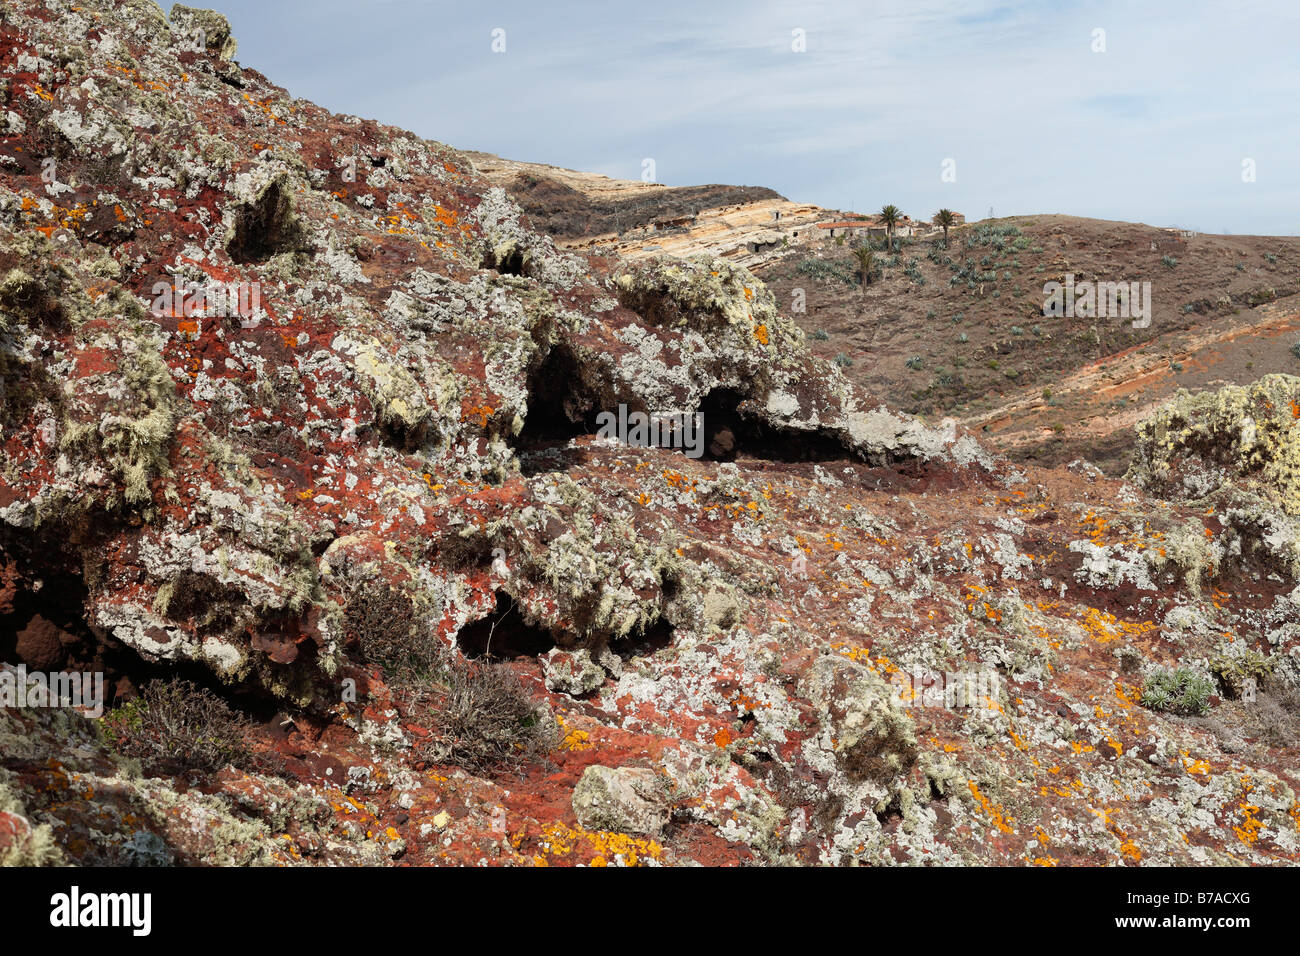 Lichen on lava stone, Majona, La Gomera, Canary Islands, Spain, Europe Stock Photo